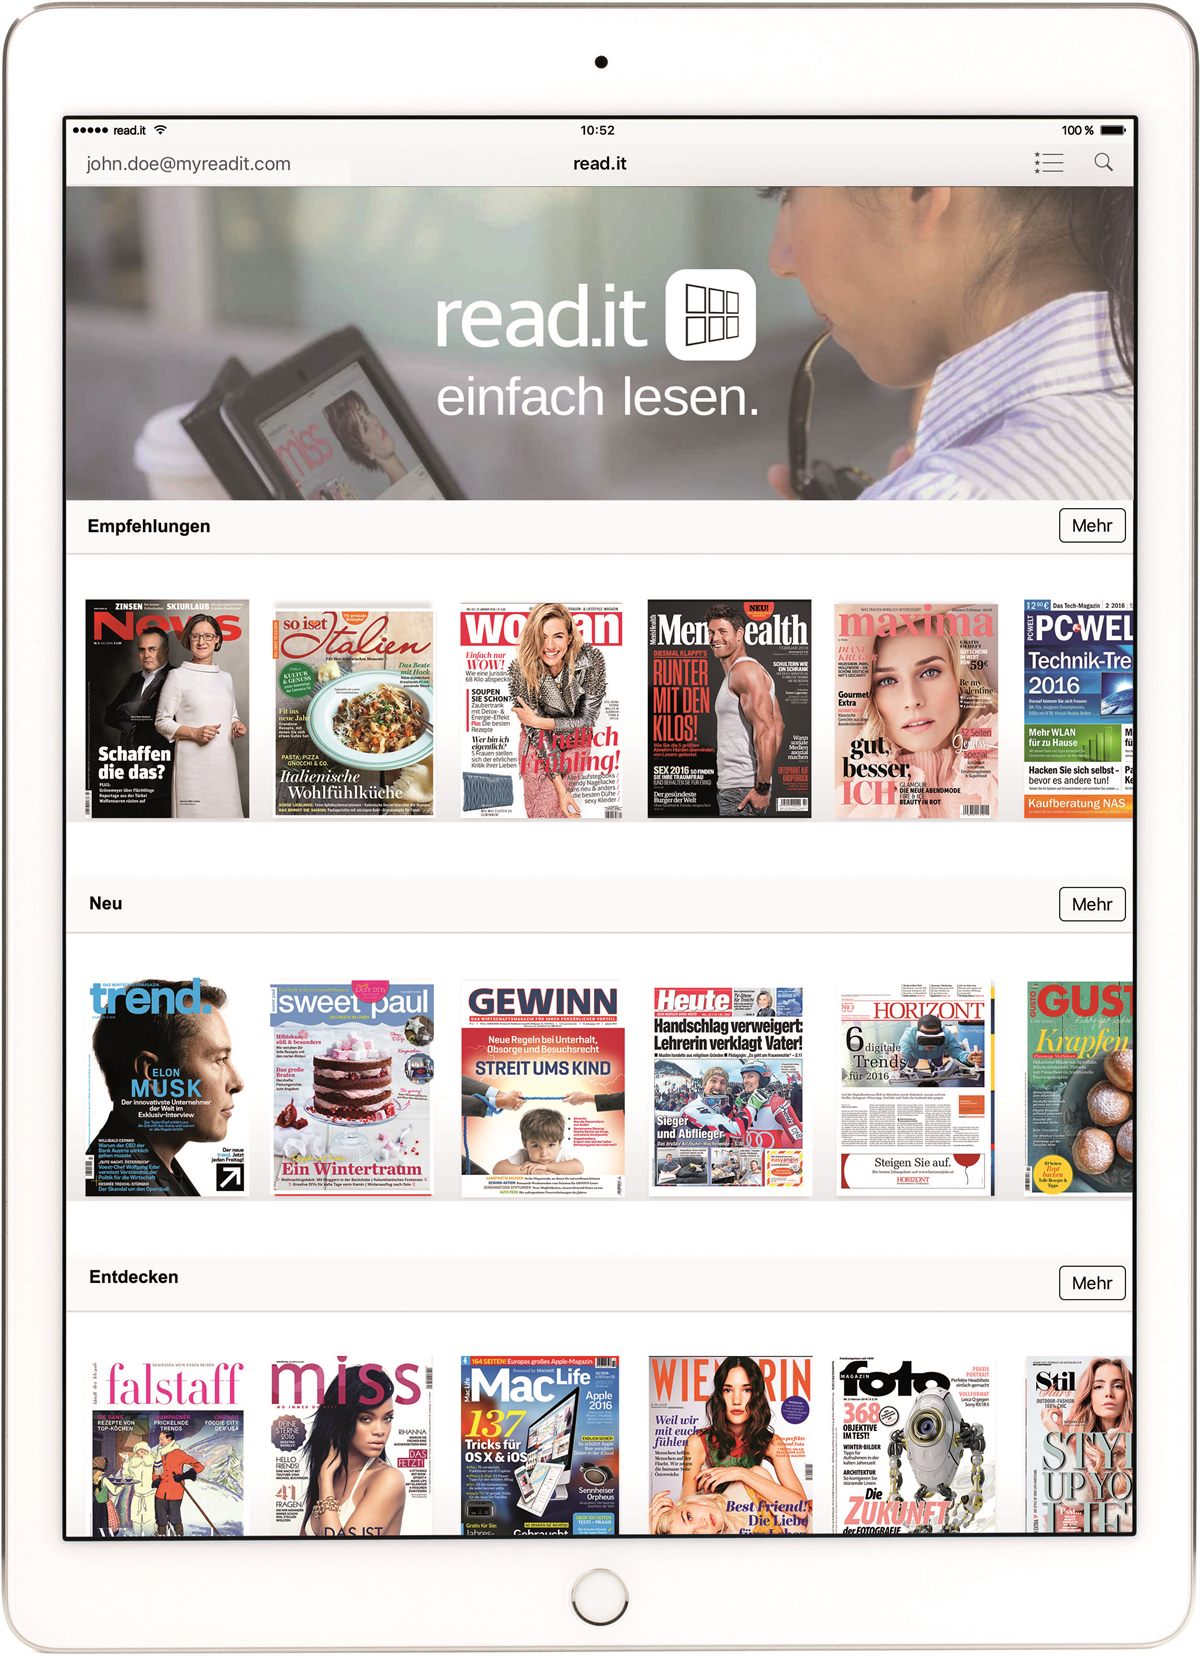 read.it: Die digitale Trafik für die Hosentasche oder readit: 200 Tageszeitungen und Magazine in einer App